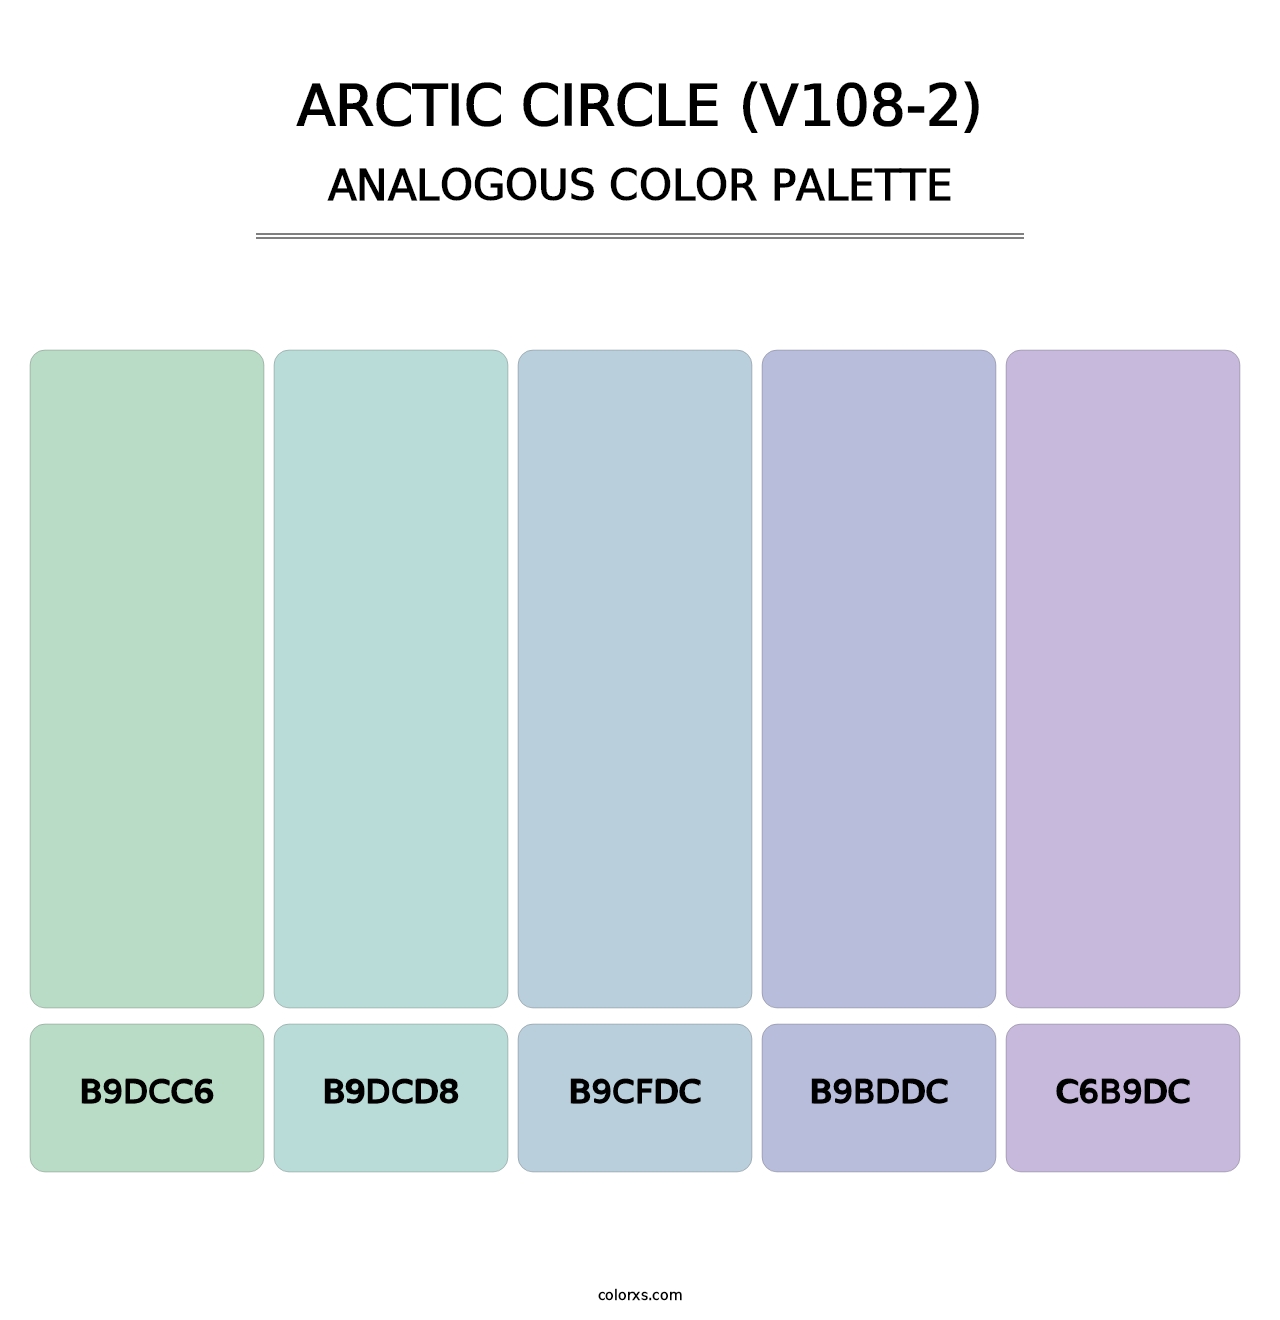 Arctic Circle (V108-2) - Analogous Color Palette